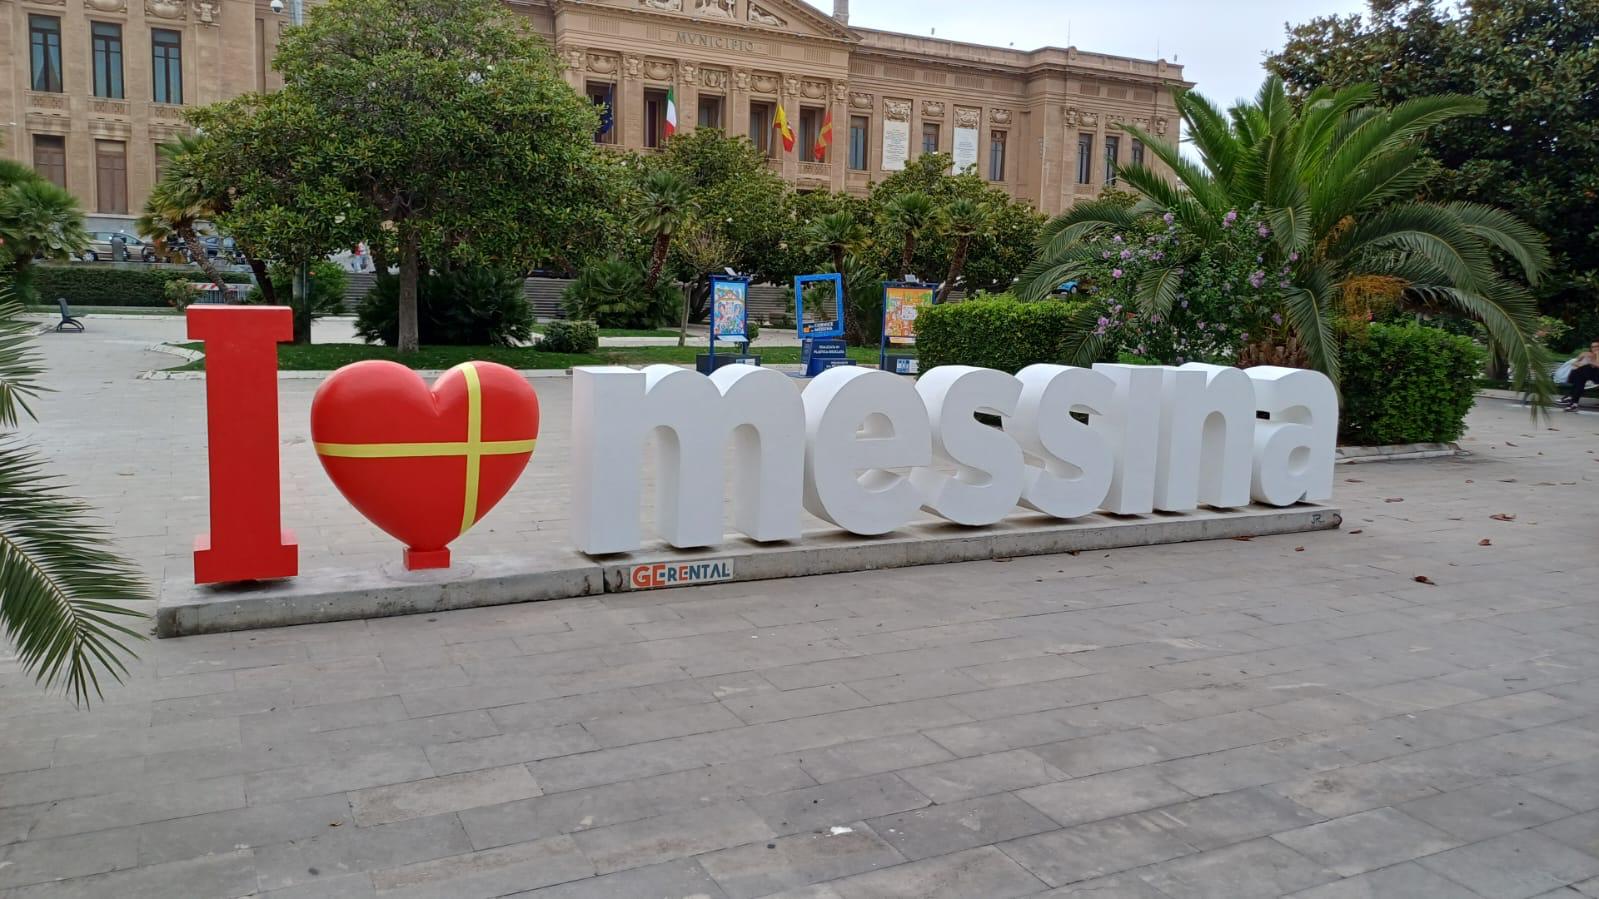 Restaurata l'installazione "I LOVE MESSINA"